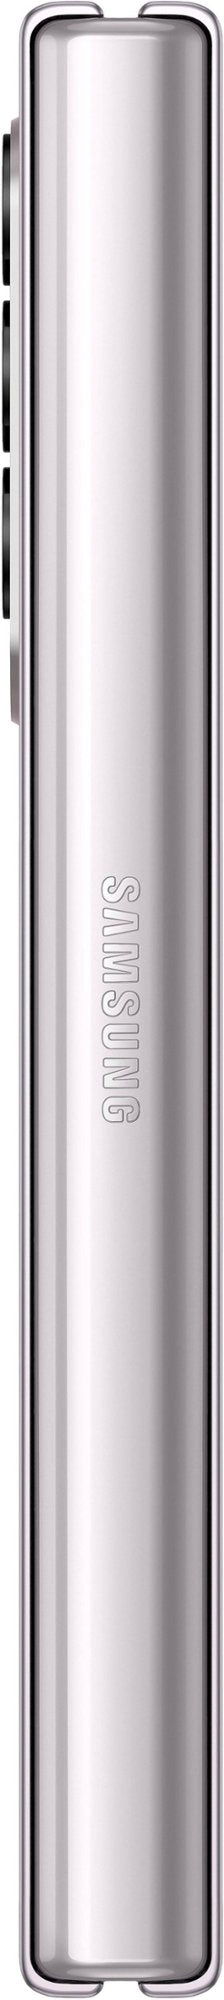 Samsung Galaxy Z Fold4 5G SM-F936W Desbloqueado, Pantalla Dual